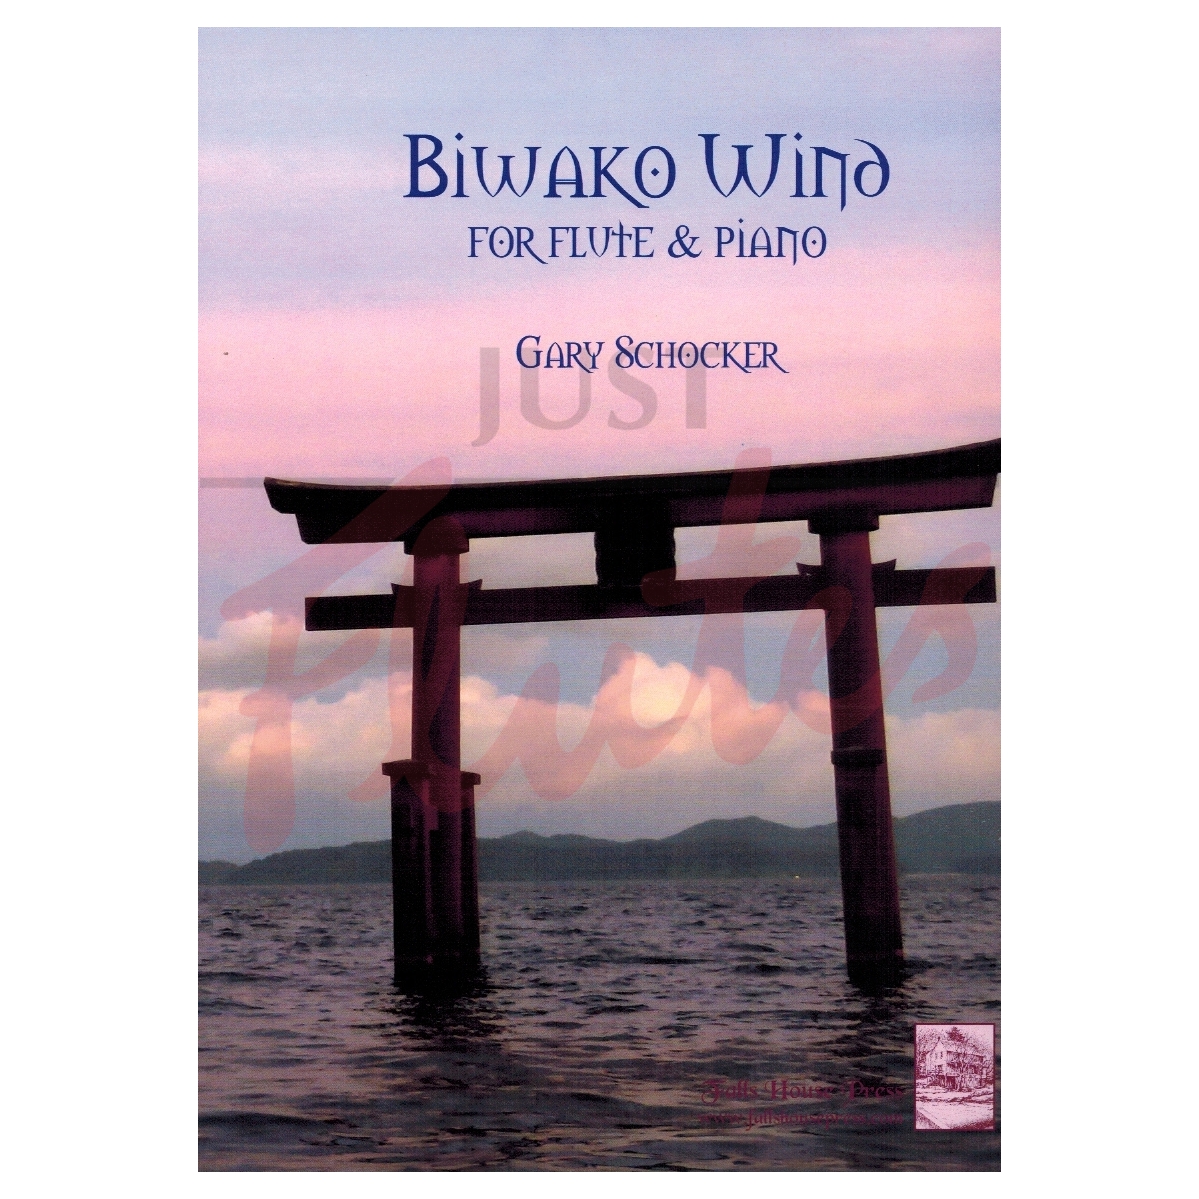 Biwako Wind